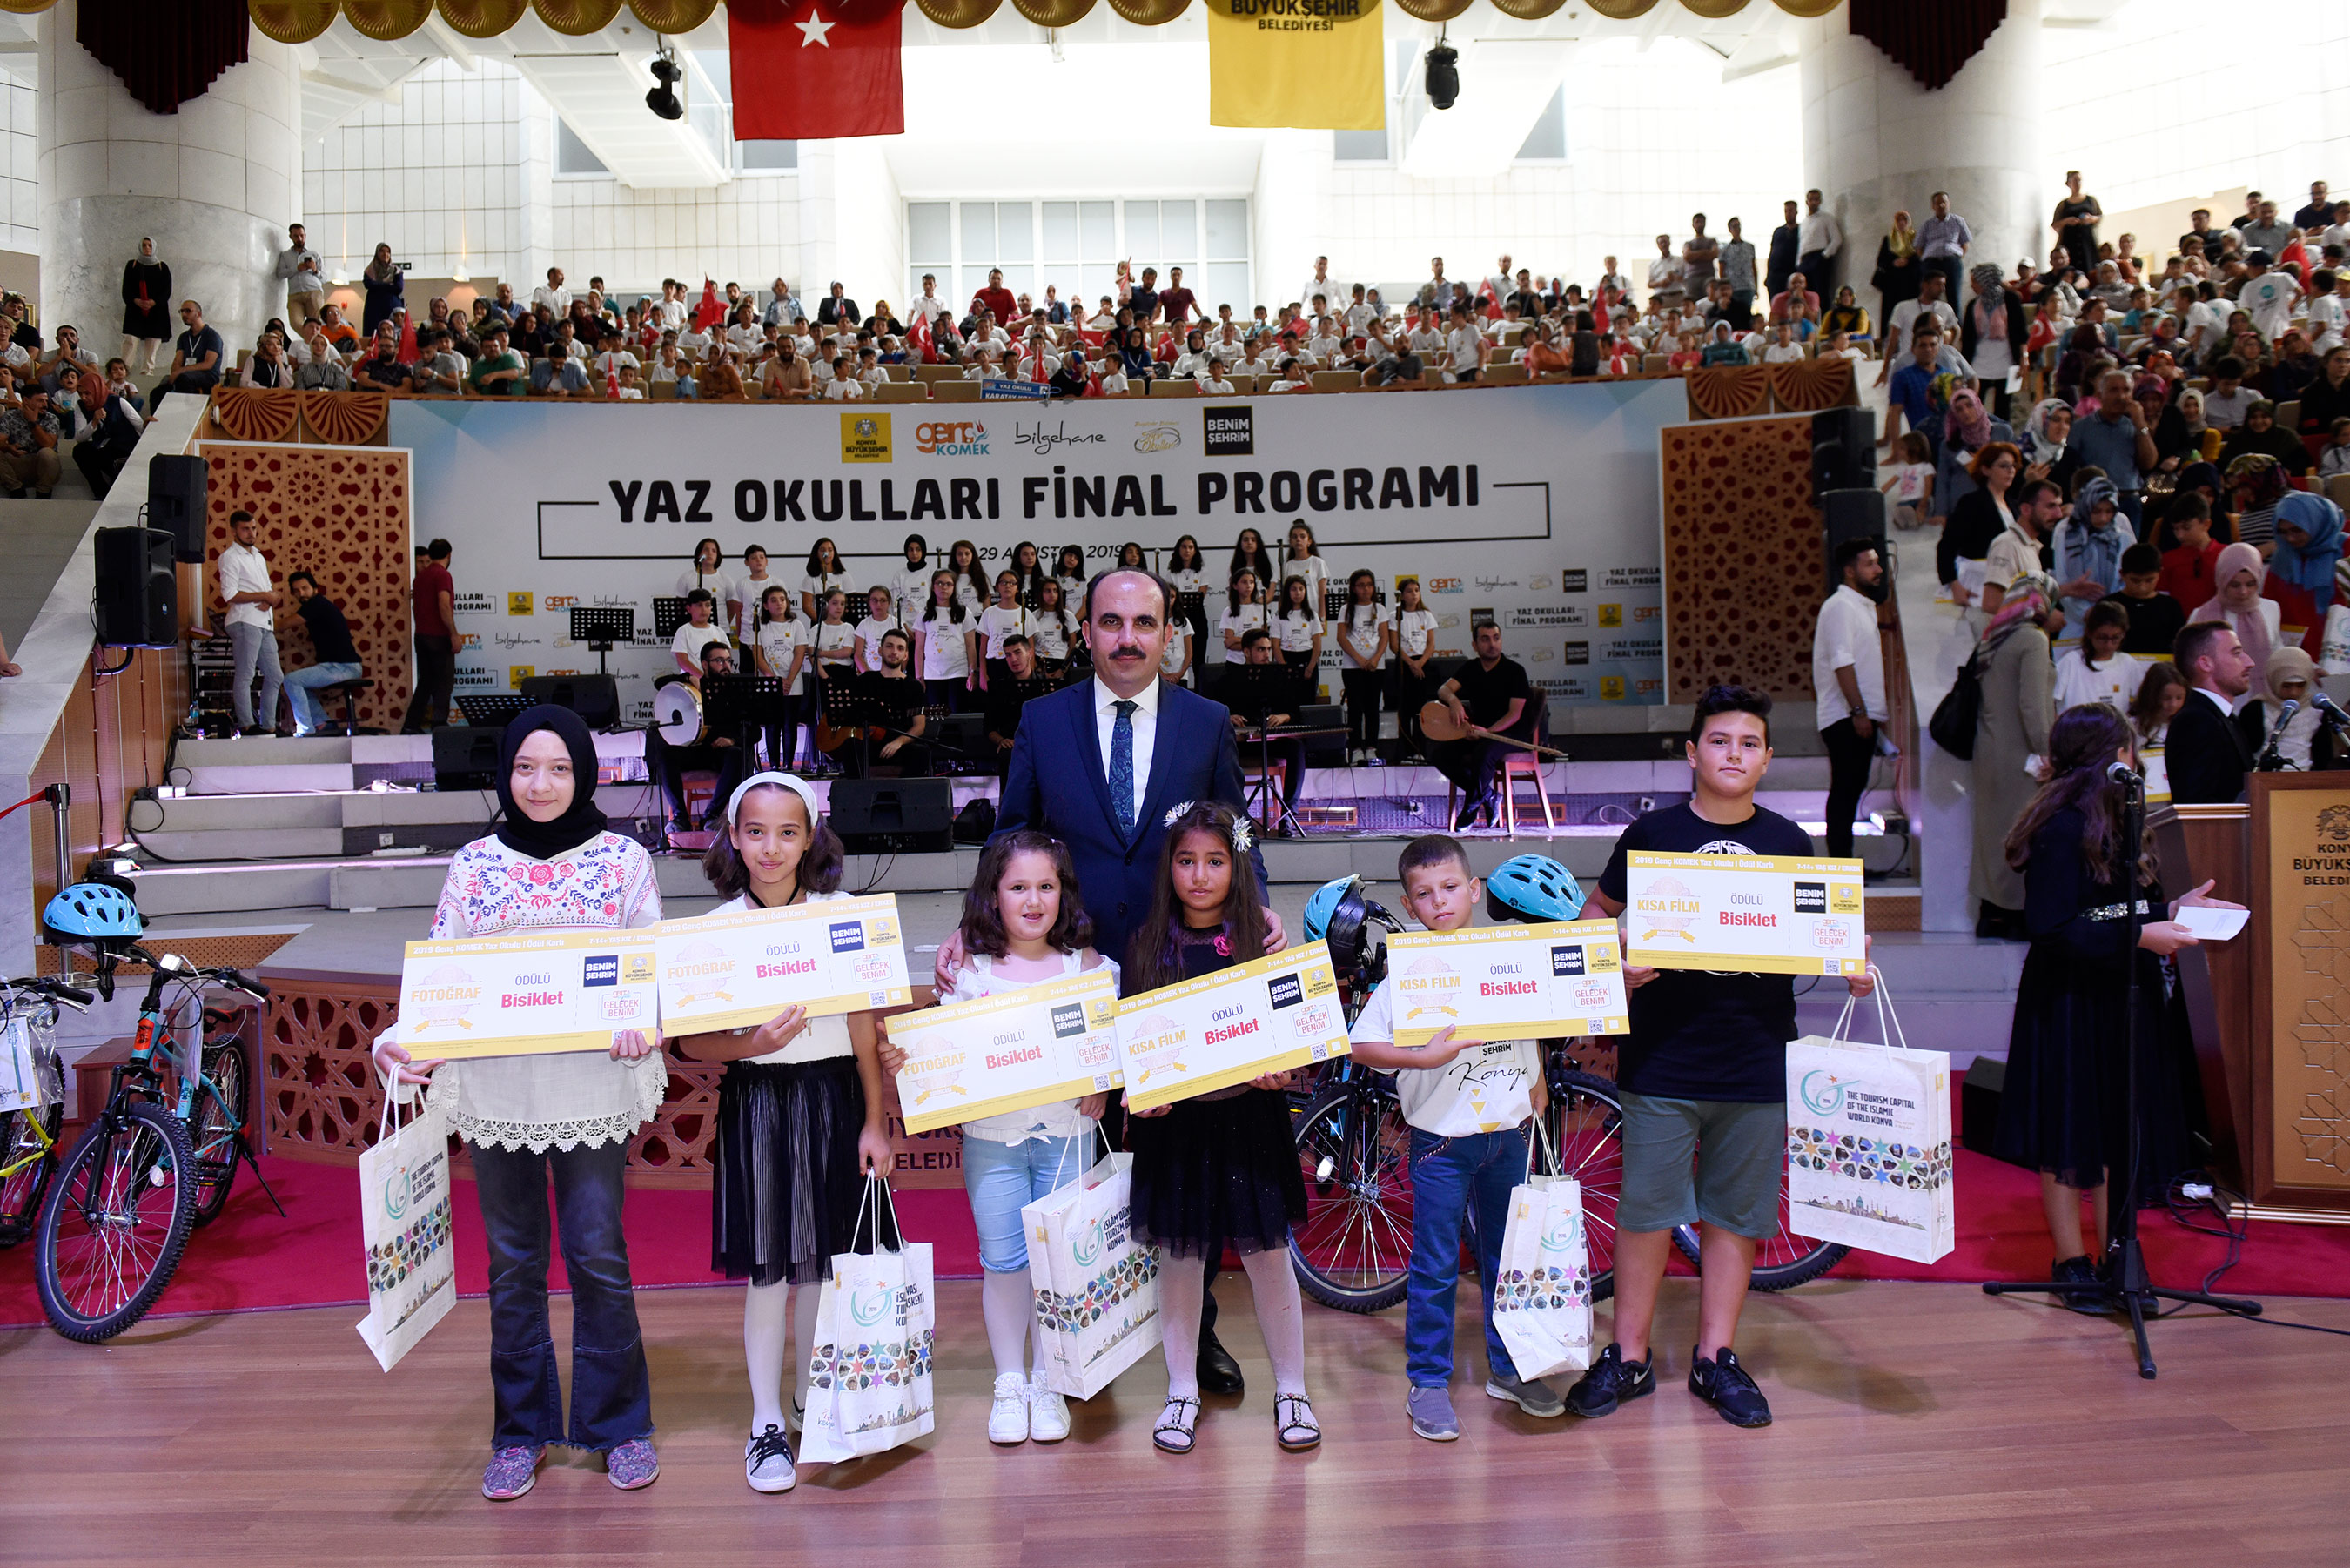 Konya Büyükşehir Belediyesi Yaz Okullarından coşkulu final 4